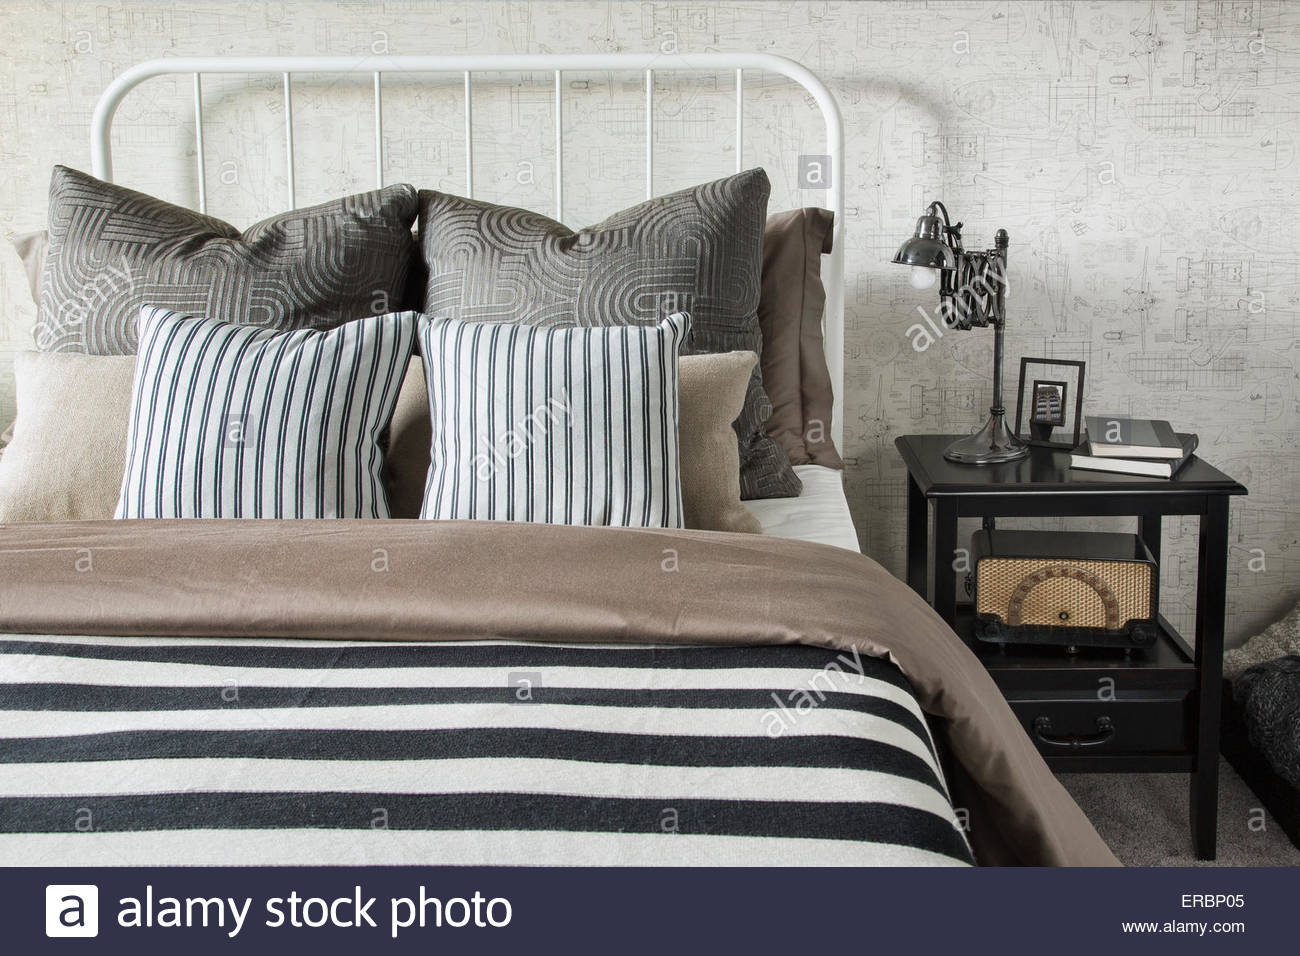 Y telas a rayas manta y almohadas en la cama Foto de stock